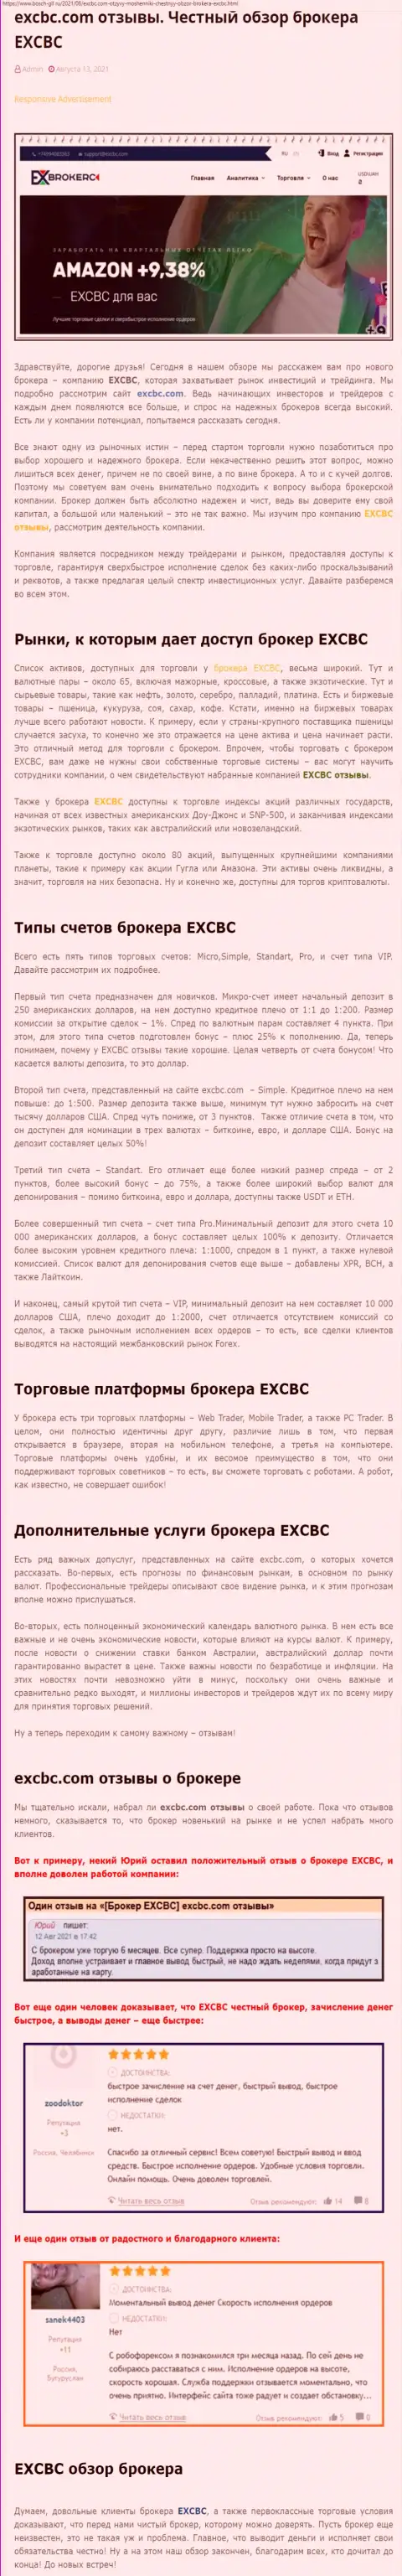 Информационный материал о FOREX-дилинговой компании EXCBC на web-сервисе бош глл ру